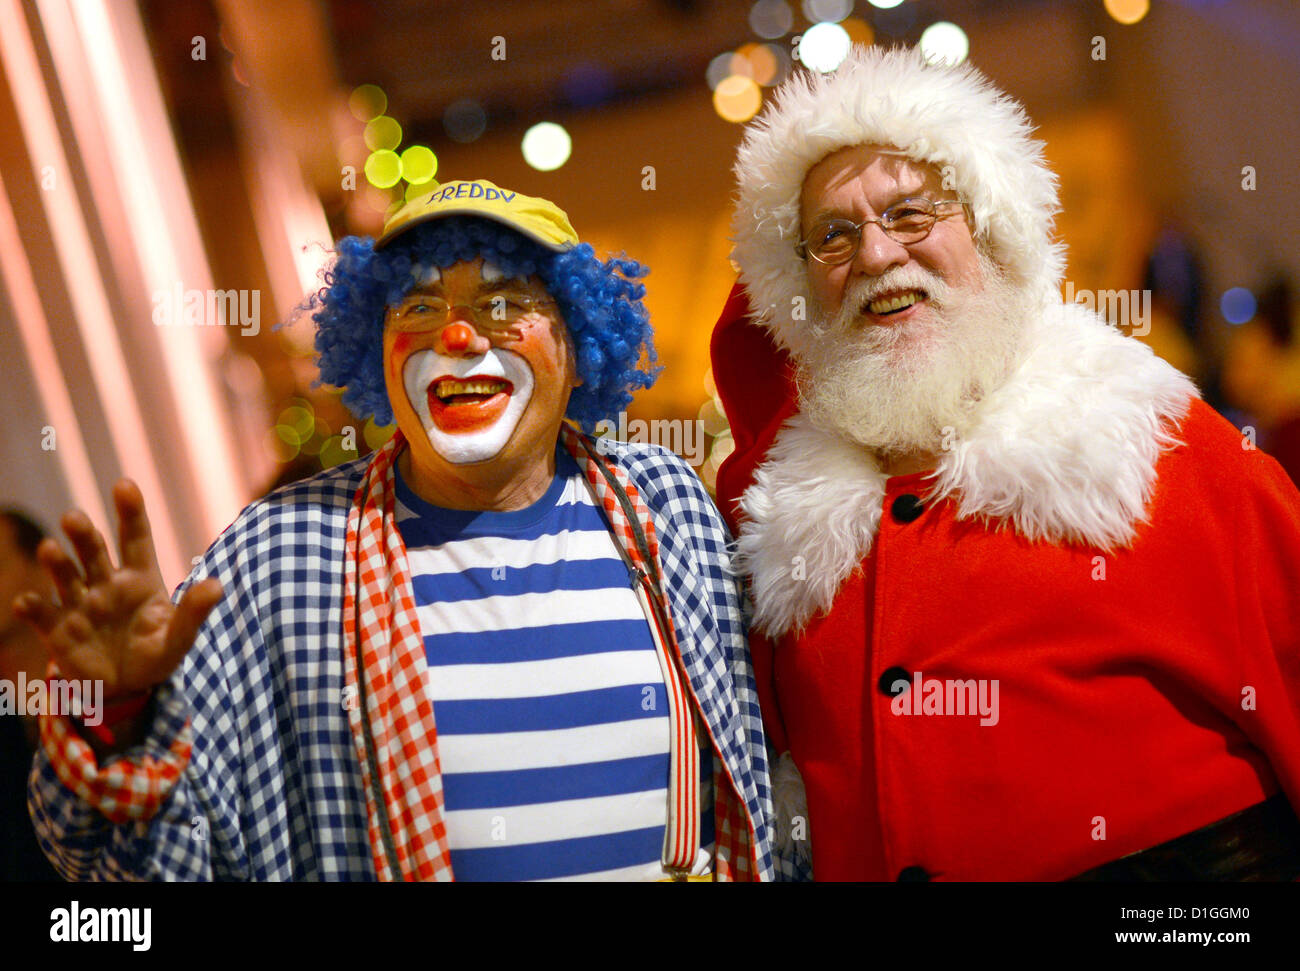 Zwei Männer gekleidet als Clown und als Santa Claus bieten Emtertainment an das traditionelle Weihnachtsessen für Obdachlose im Hotel Estrel in Berlin-Neukölln, Deutschland, 19. Dezember 2012. Das Weihnachtsessen wurde von Frank Zander, gemeinnütziger Verein Diakonisches Werk und Hotel Estrel seit 18 Jahren organisiert. Foto: BRITTA PEDERSEN Stockfoto